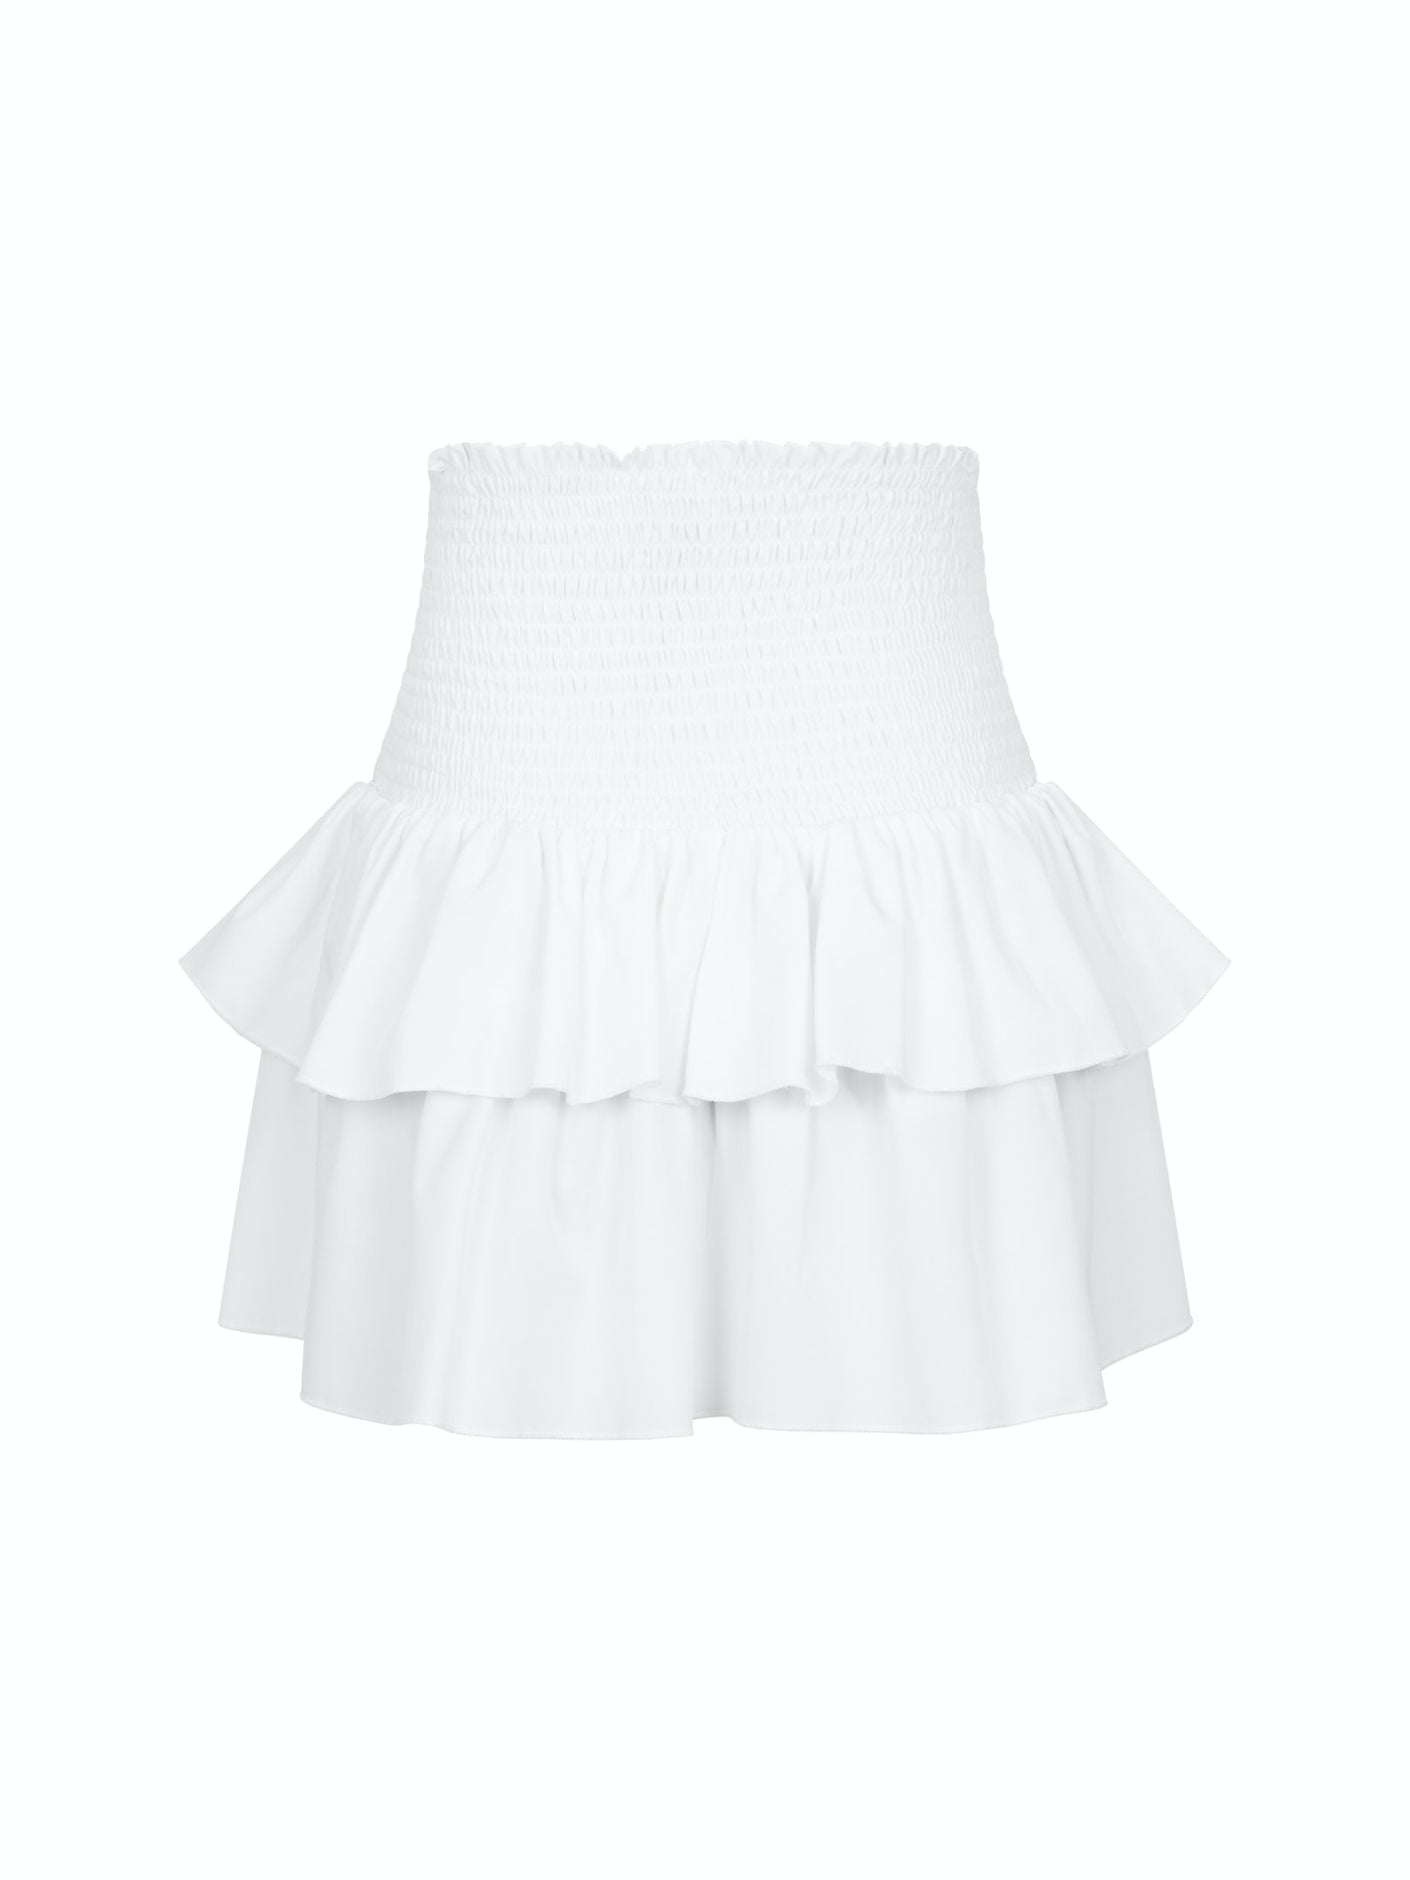 Carin Skirt White